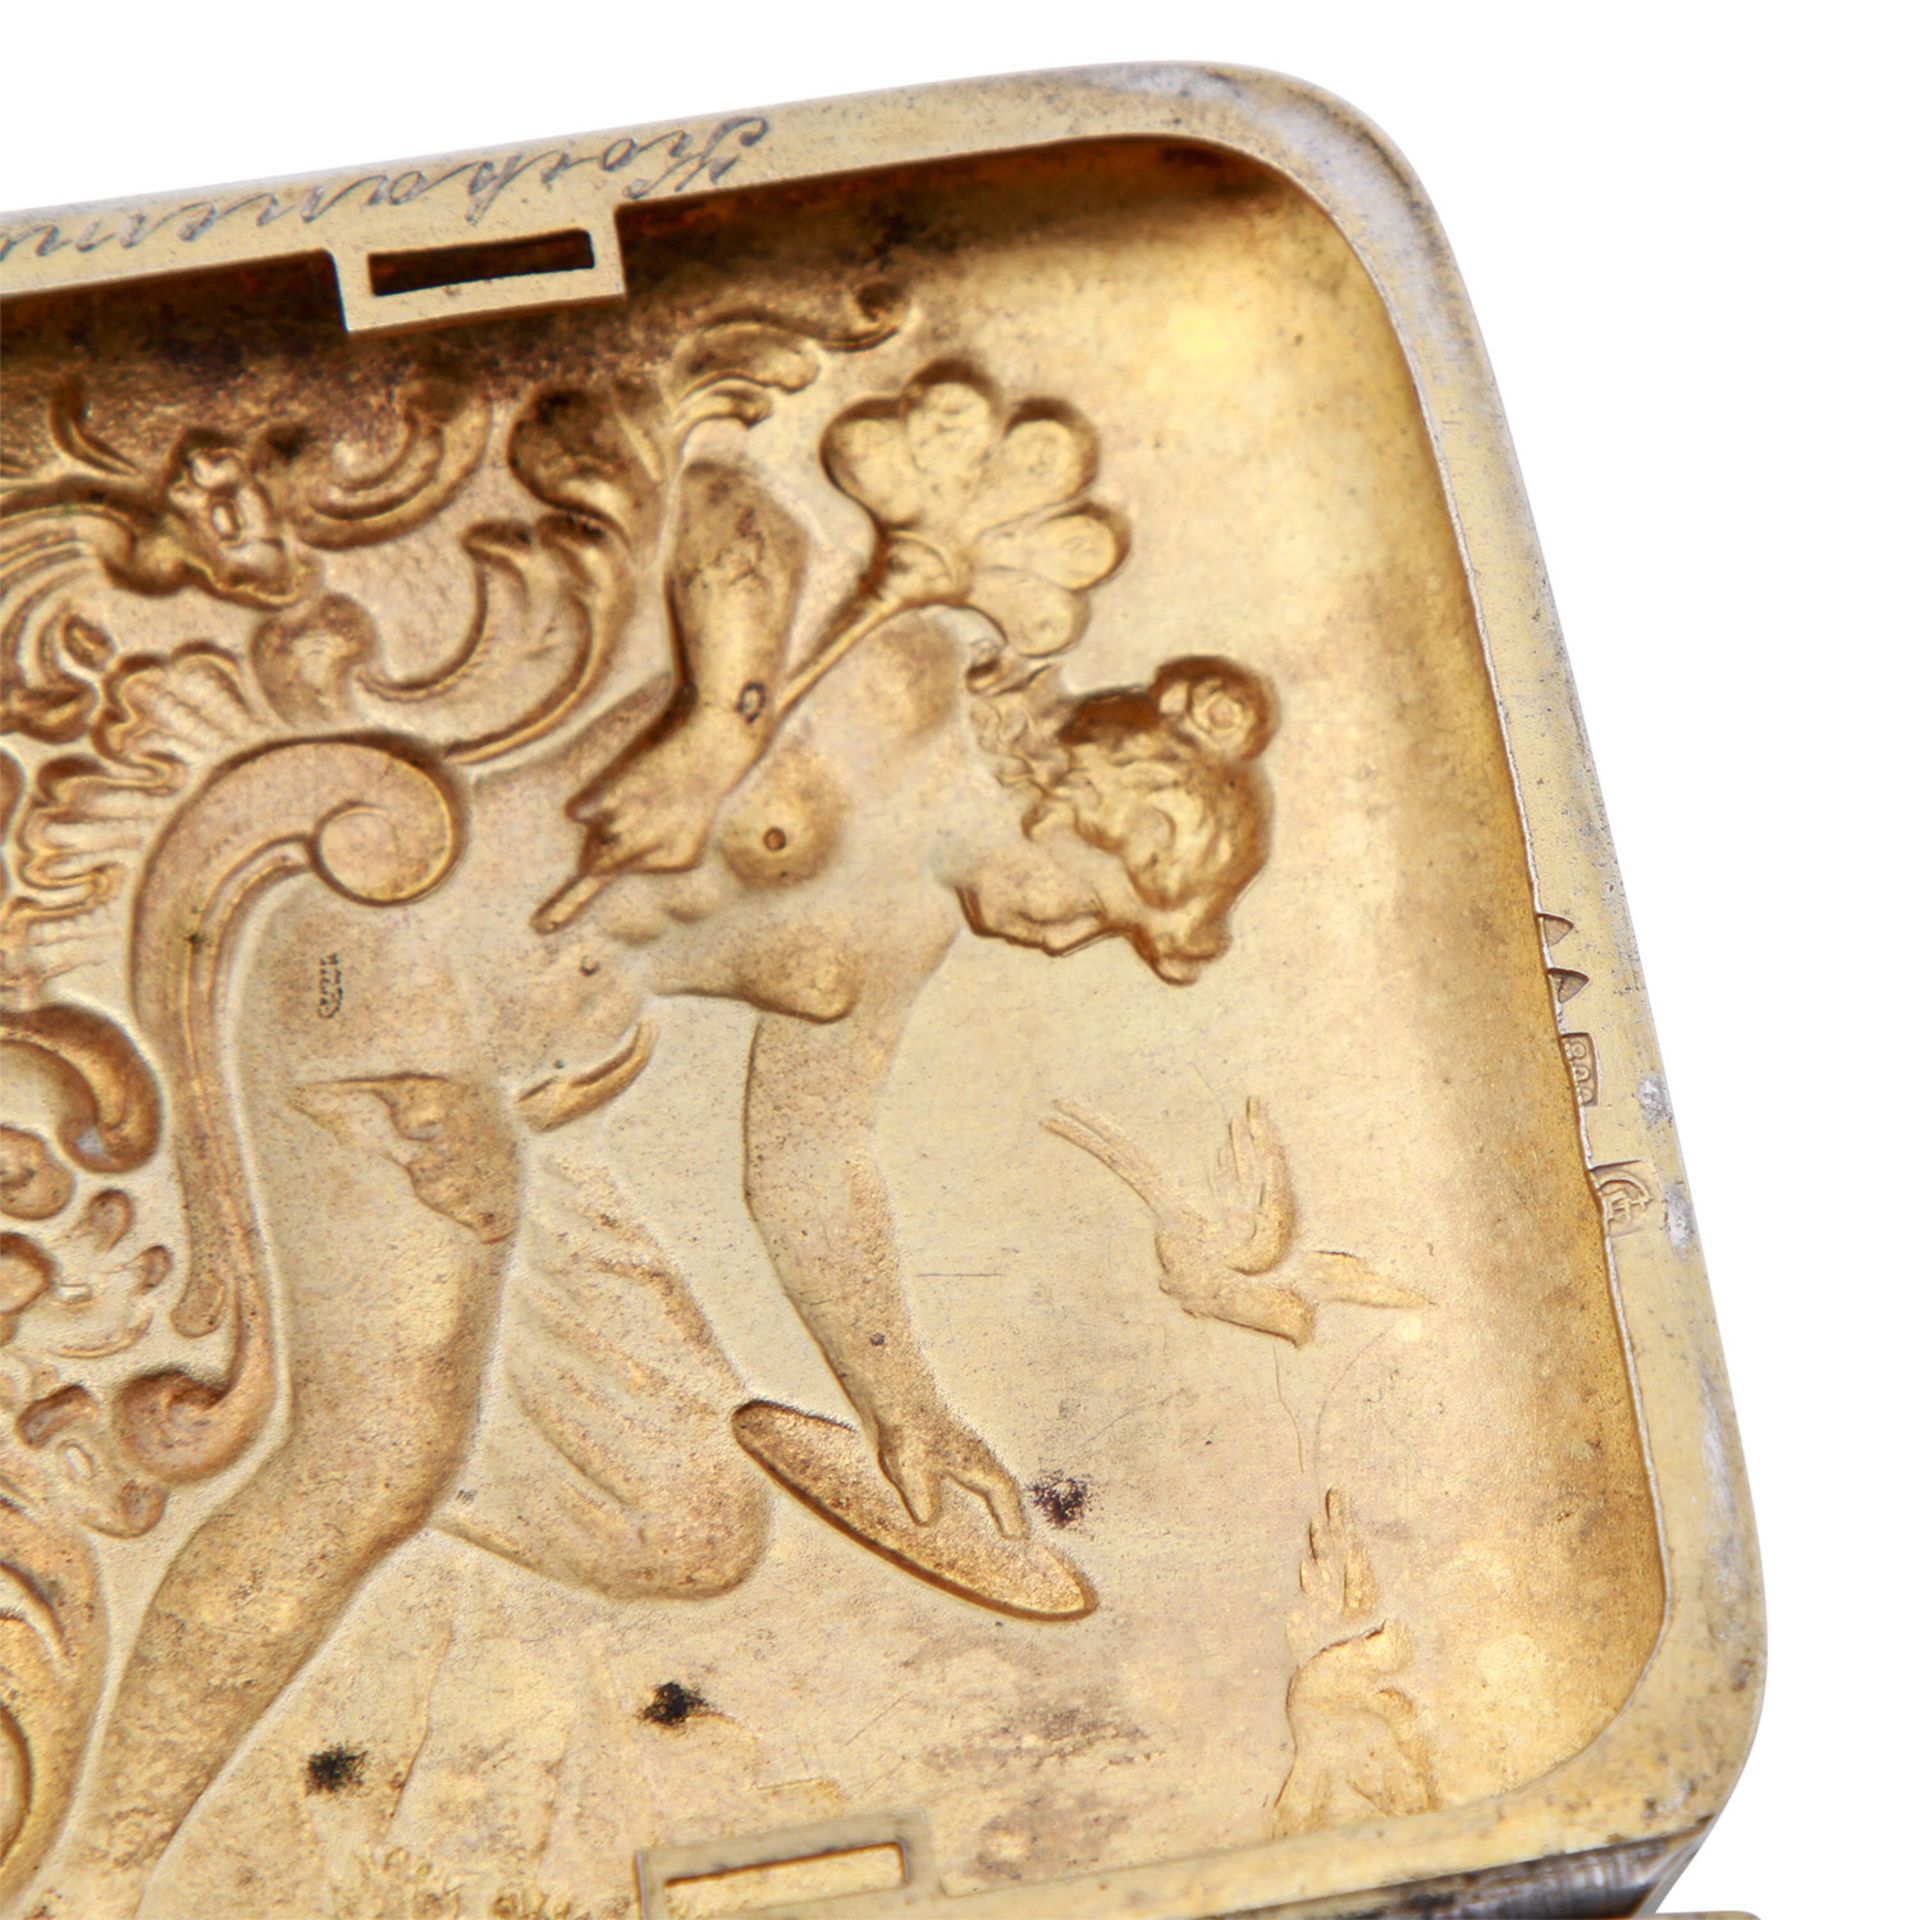 DEUTSCH Zigarettendose, 800 Silber, um 1898.Rechteckige Dose mit scharniertem Deckel, Reliefdekor - Bild 5 aus 5